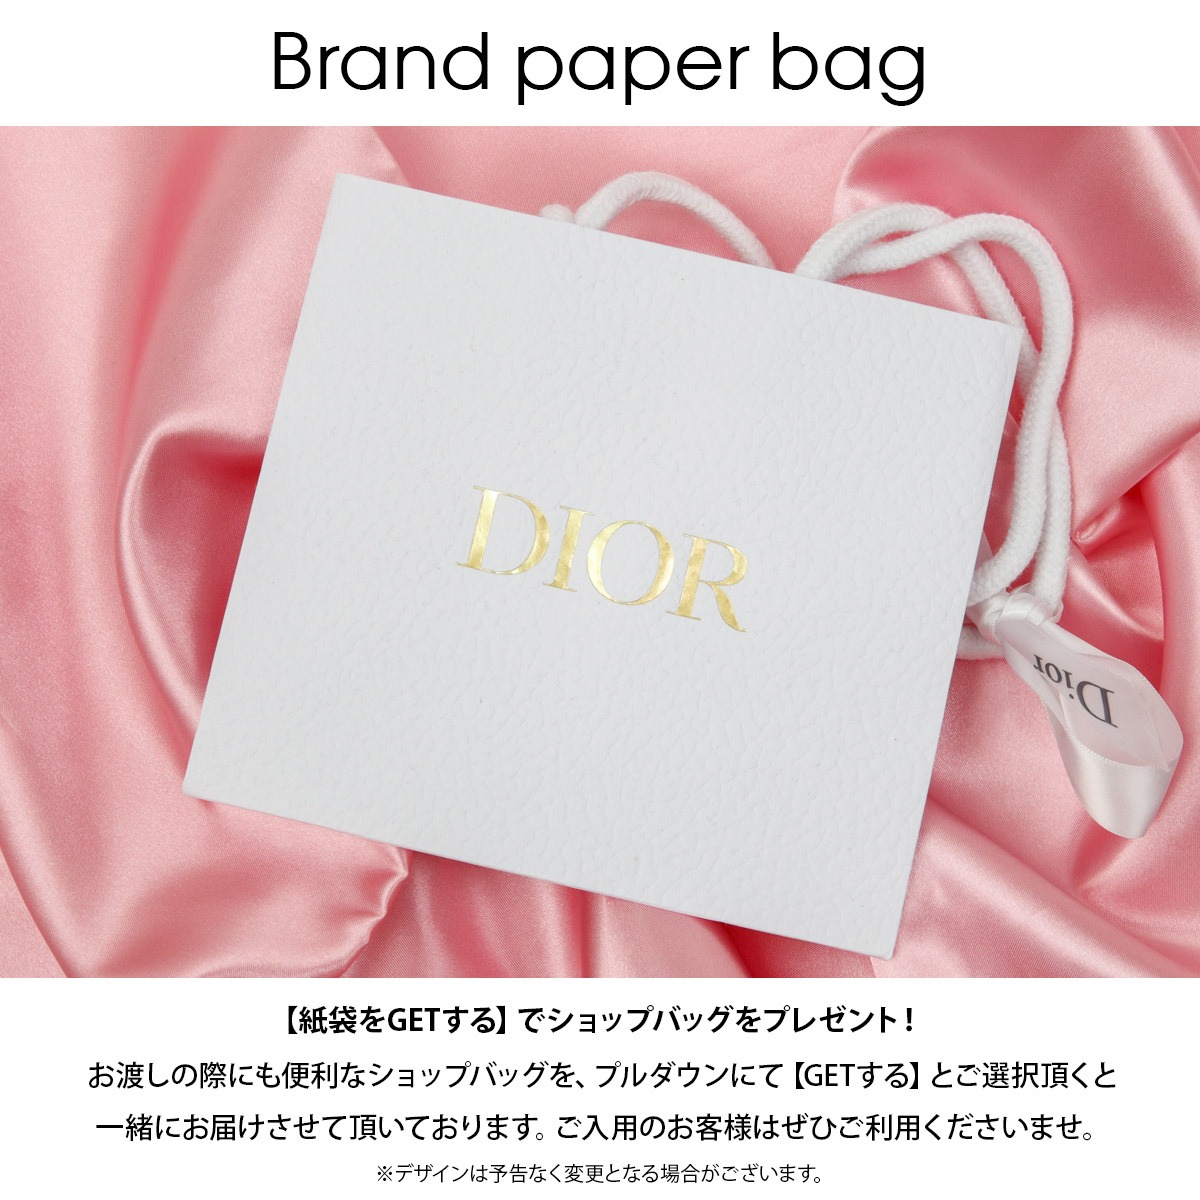 ディオール リップ Dior アディクト リップスティック ケース ブランド 